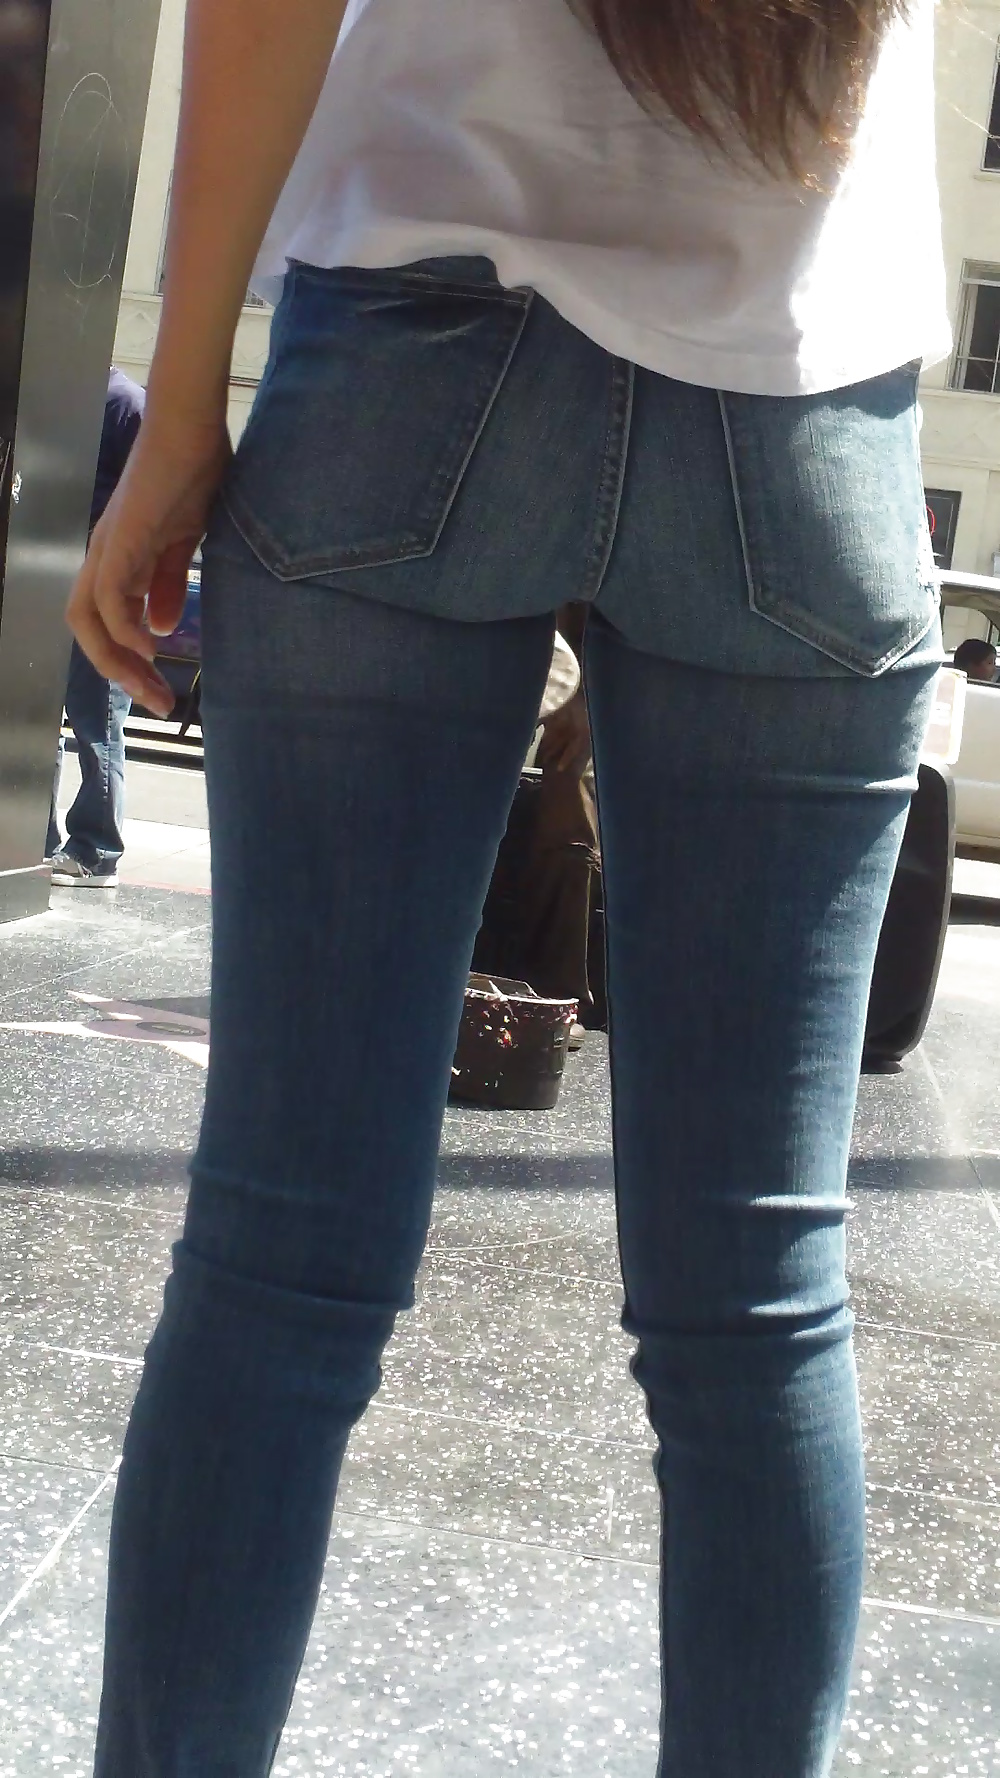 Popular teen girls ass & butt in jeans Part 5 #28736001